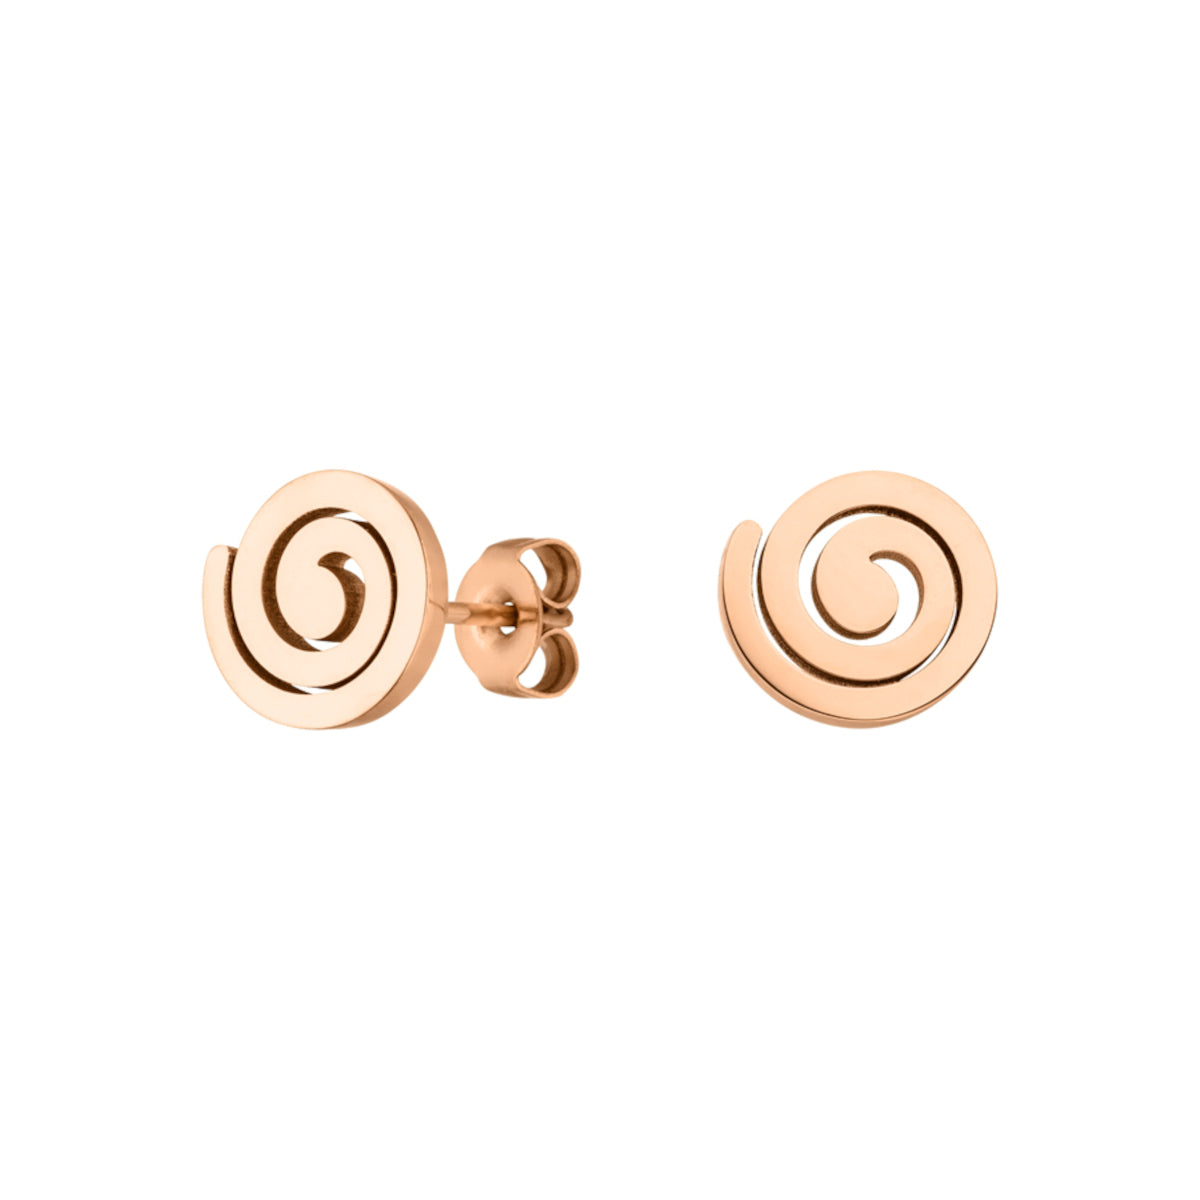 Rosegoldene Ohrringe mit Spiralen Symbol aus Edelstahl